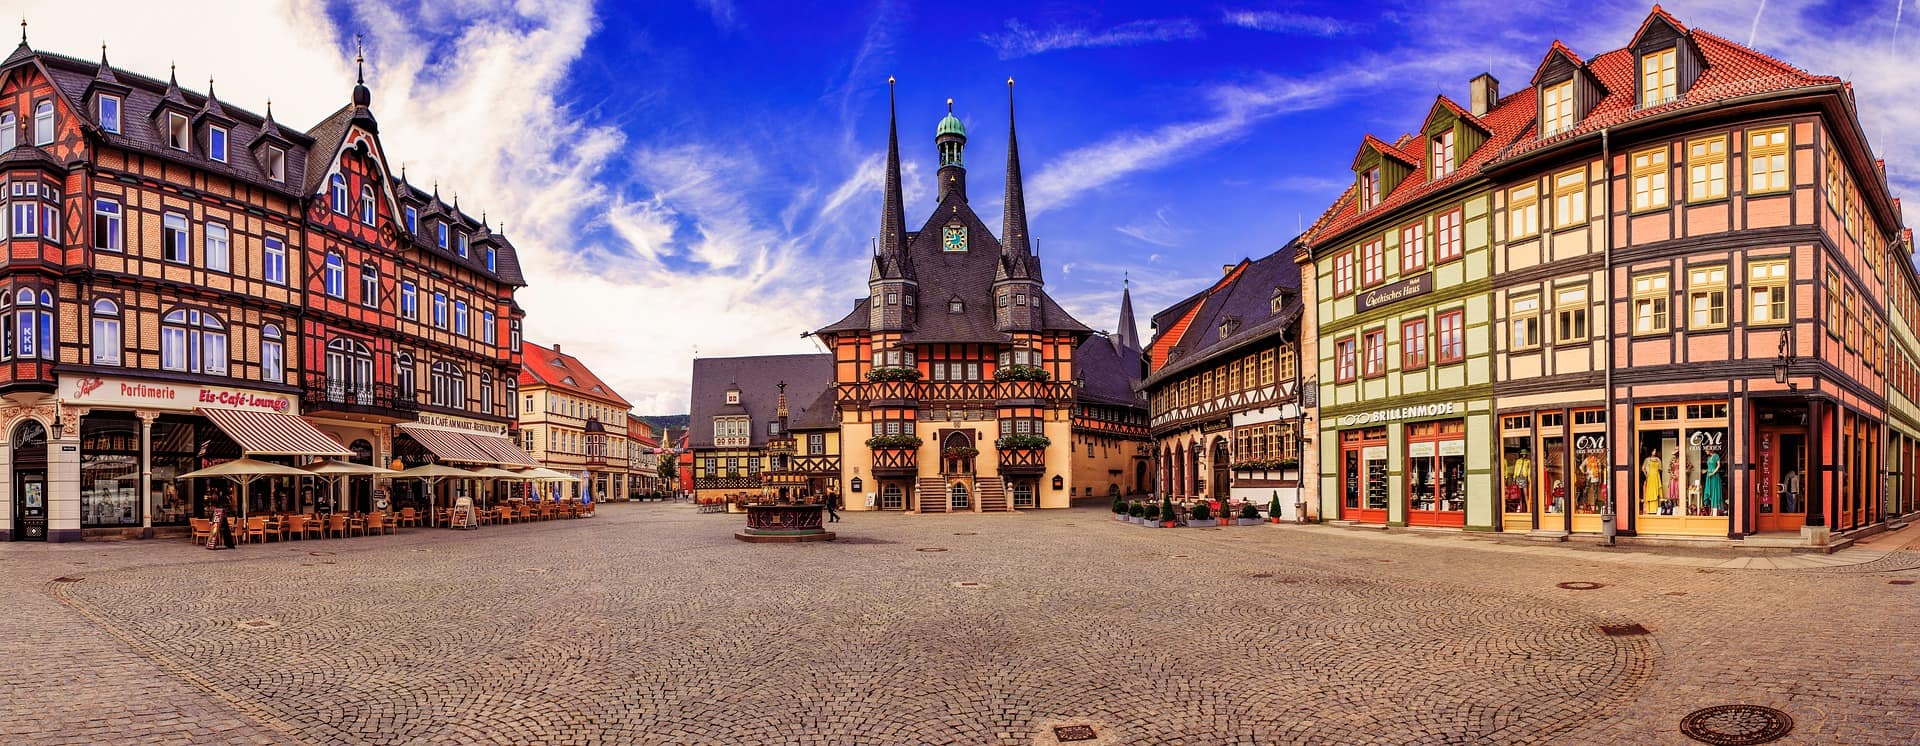 Blick auf den mittelalterlichen Marktplatz in Wernigerode mit bunten Fachwerkhäusern